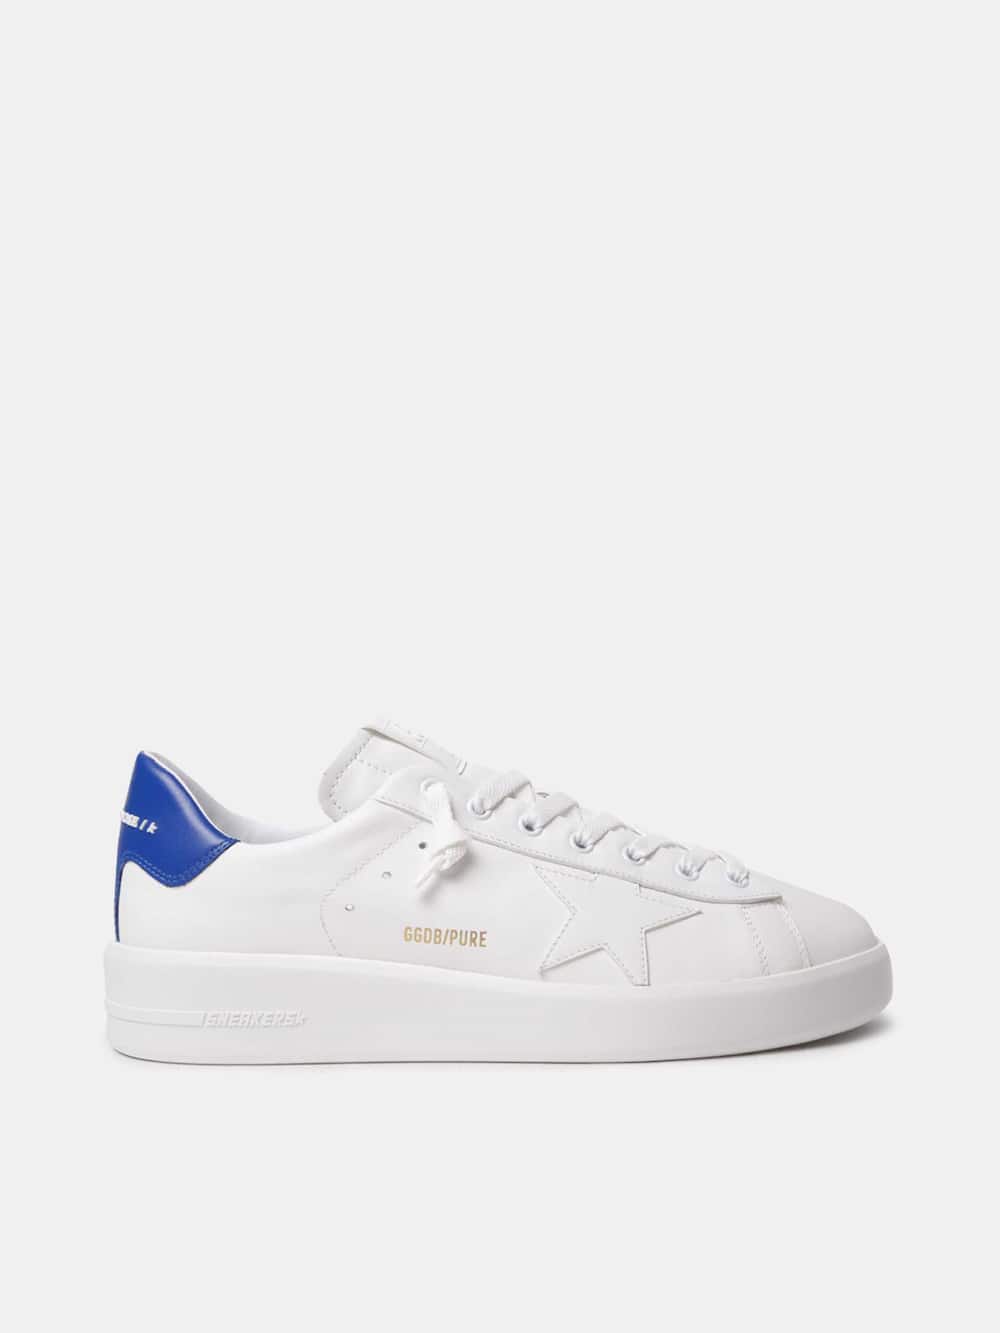 Golden Goose - Purestar sneakers with blue heel tab in 